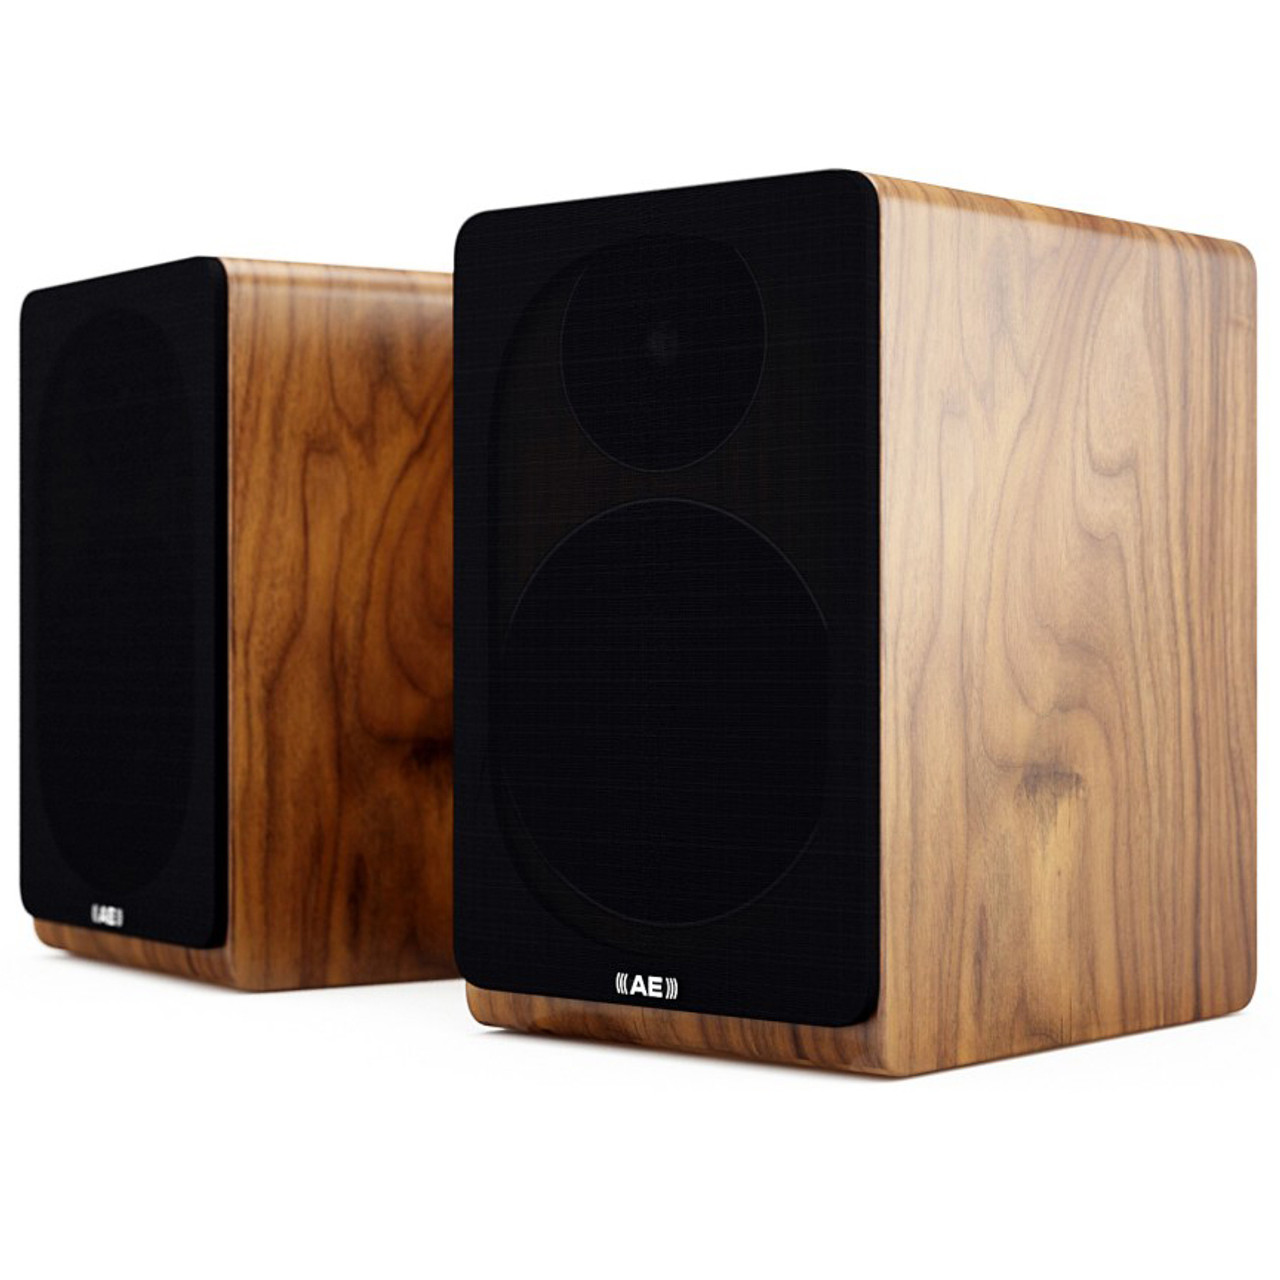 Acoustic Energy AE100 speakers